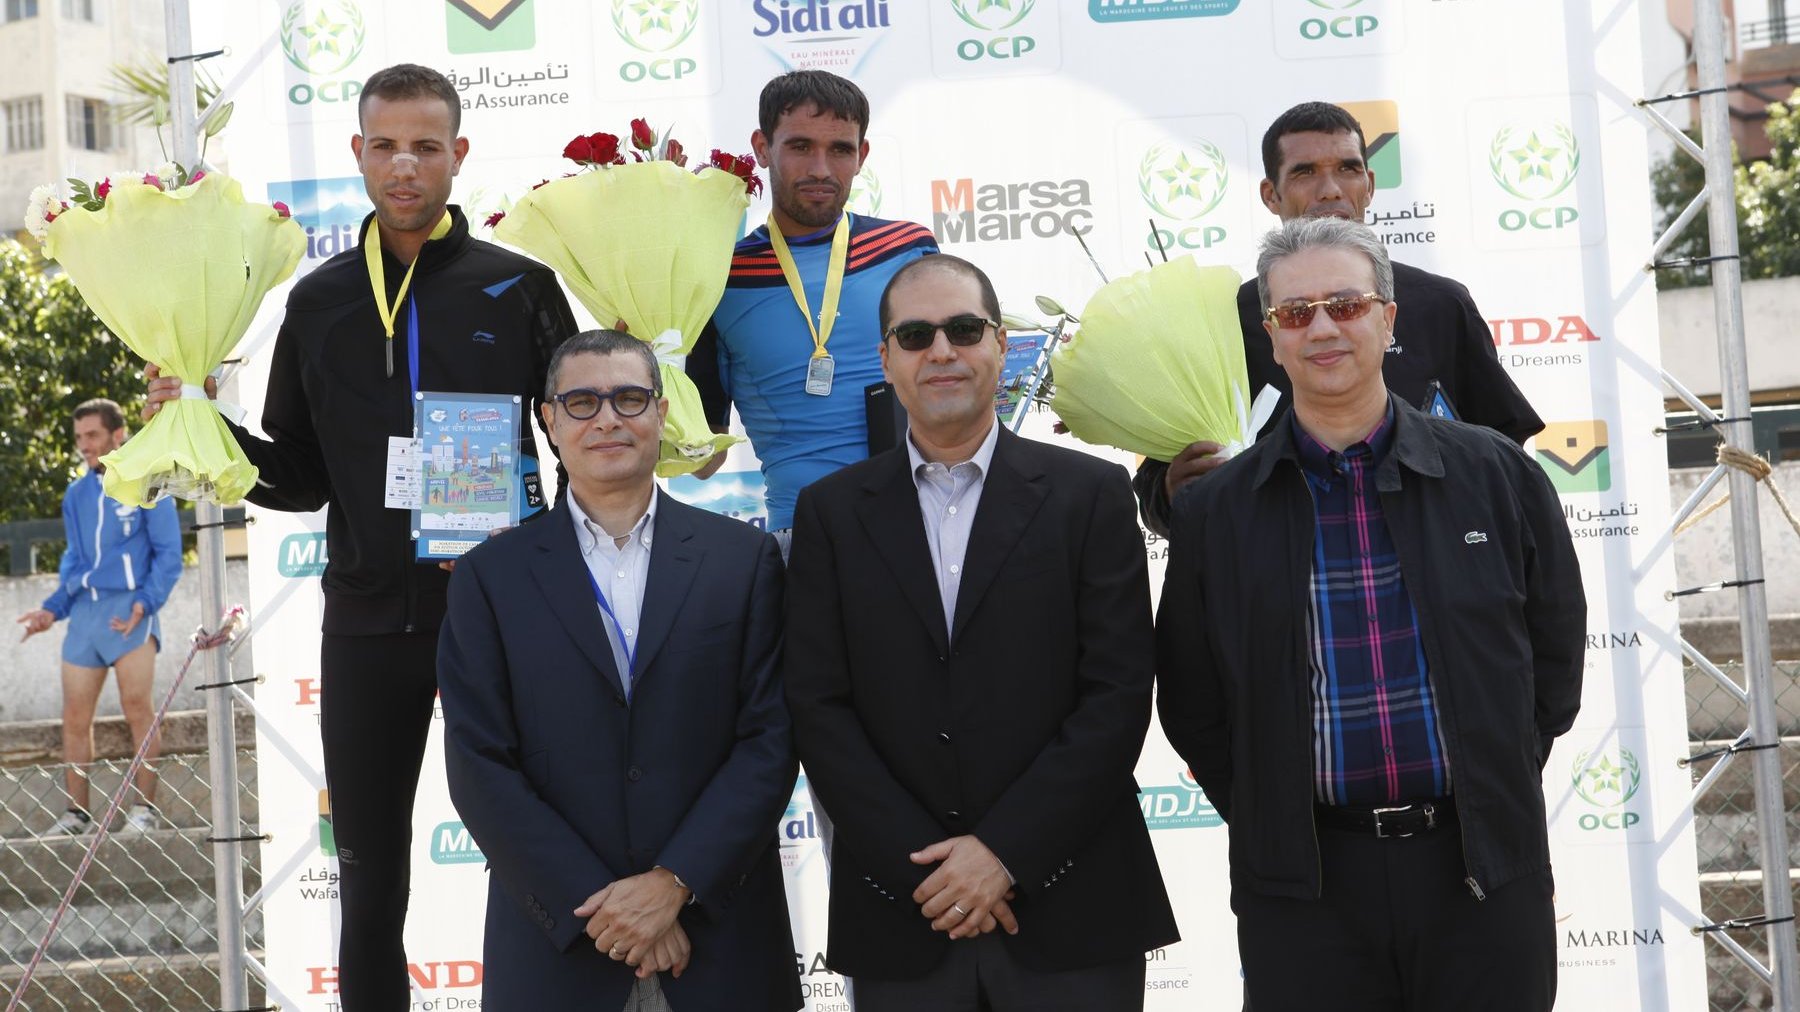 Khalid Safir, wali du grand Casablanca, aux côtés de Said Ibrahimi, président du Grand marathon international de Casablanca, pour la remise des prix du semi-marathon.
